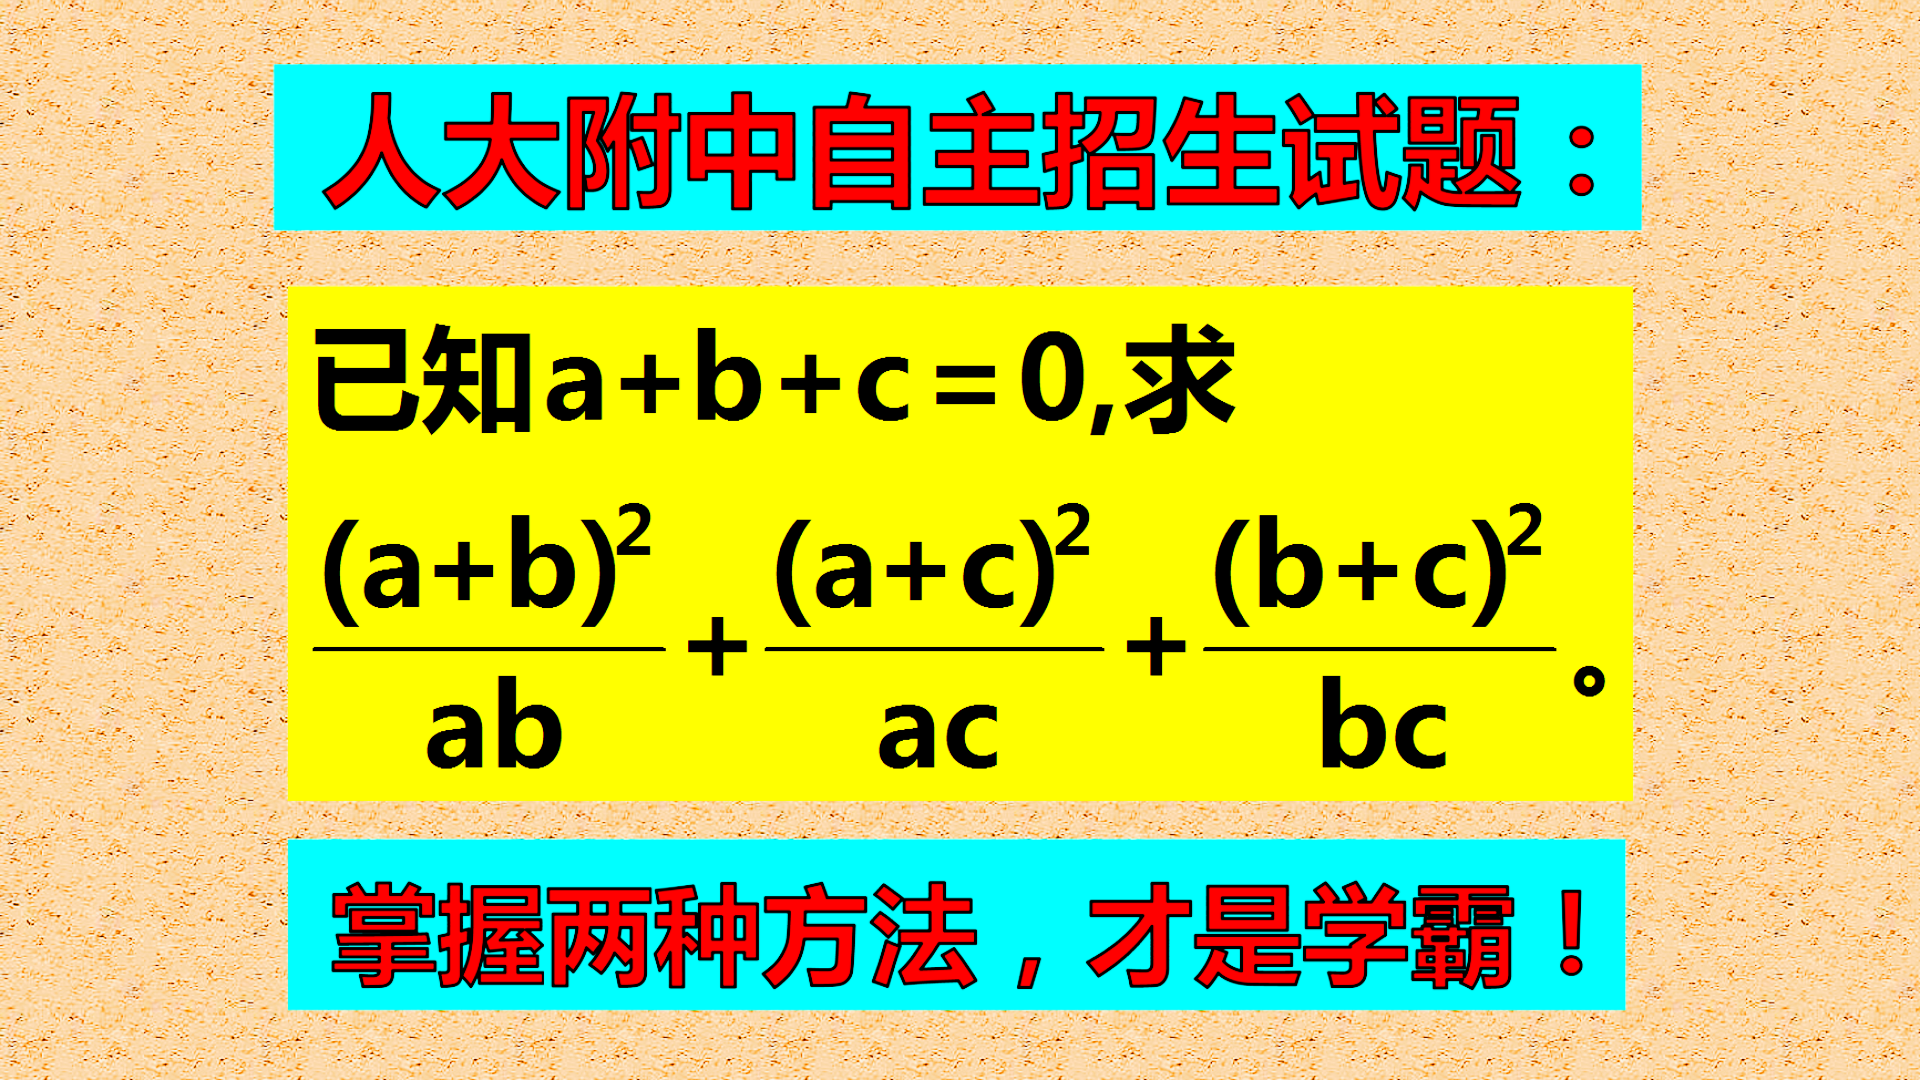 人大附中自主招生试题: 已知a+b+c=0, 求(a+b)²/ab+(a+c)²/ac+(c+b)²/cb的值。